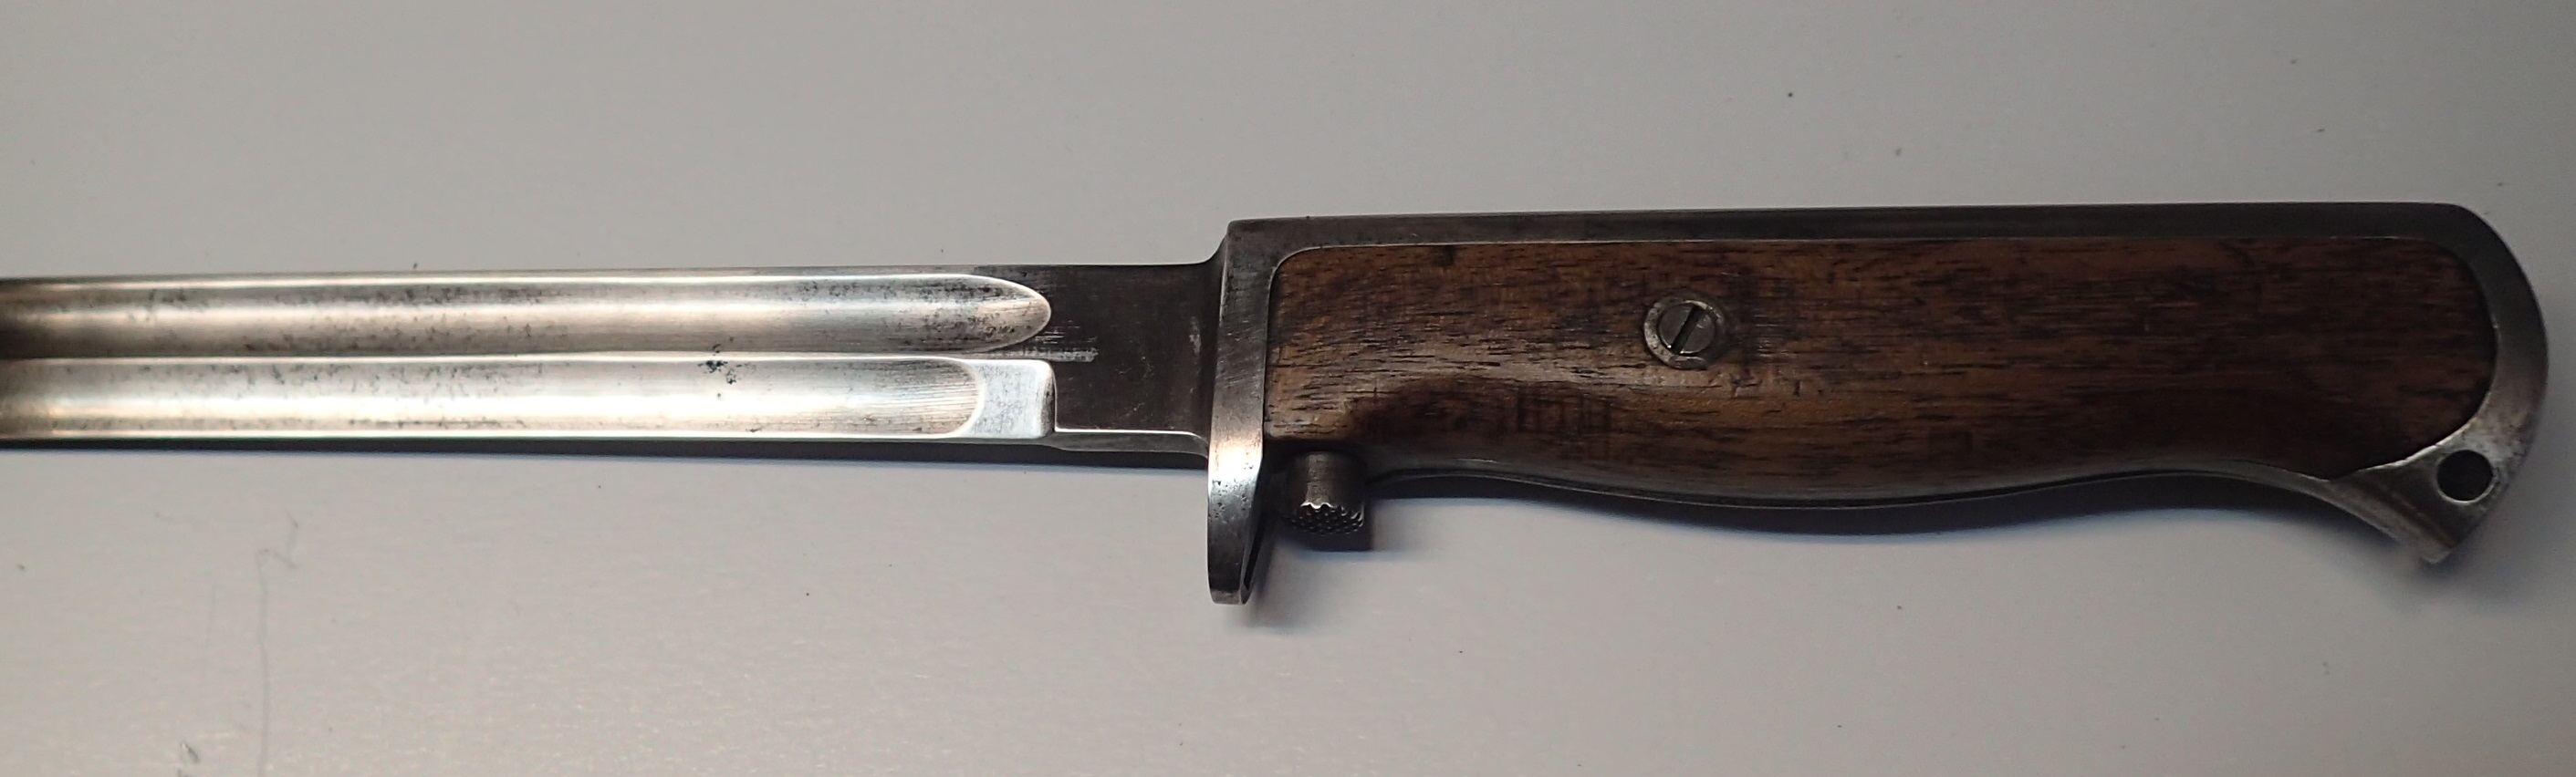 ./guns/bajonett/bilder/Blank-Kongsberg-Knivbajonett-M1912-2.JPG